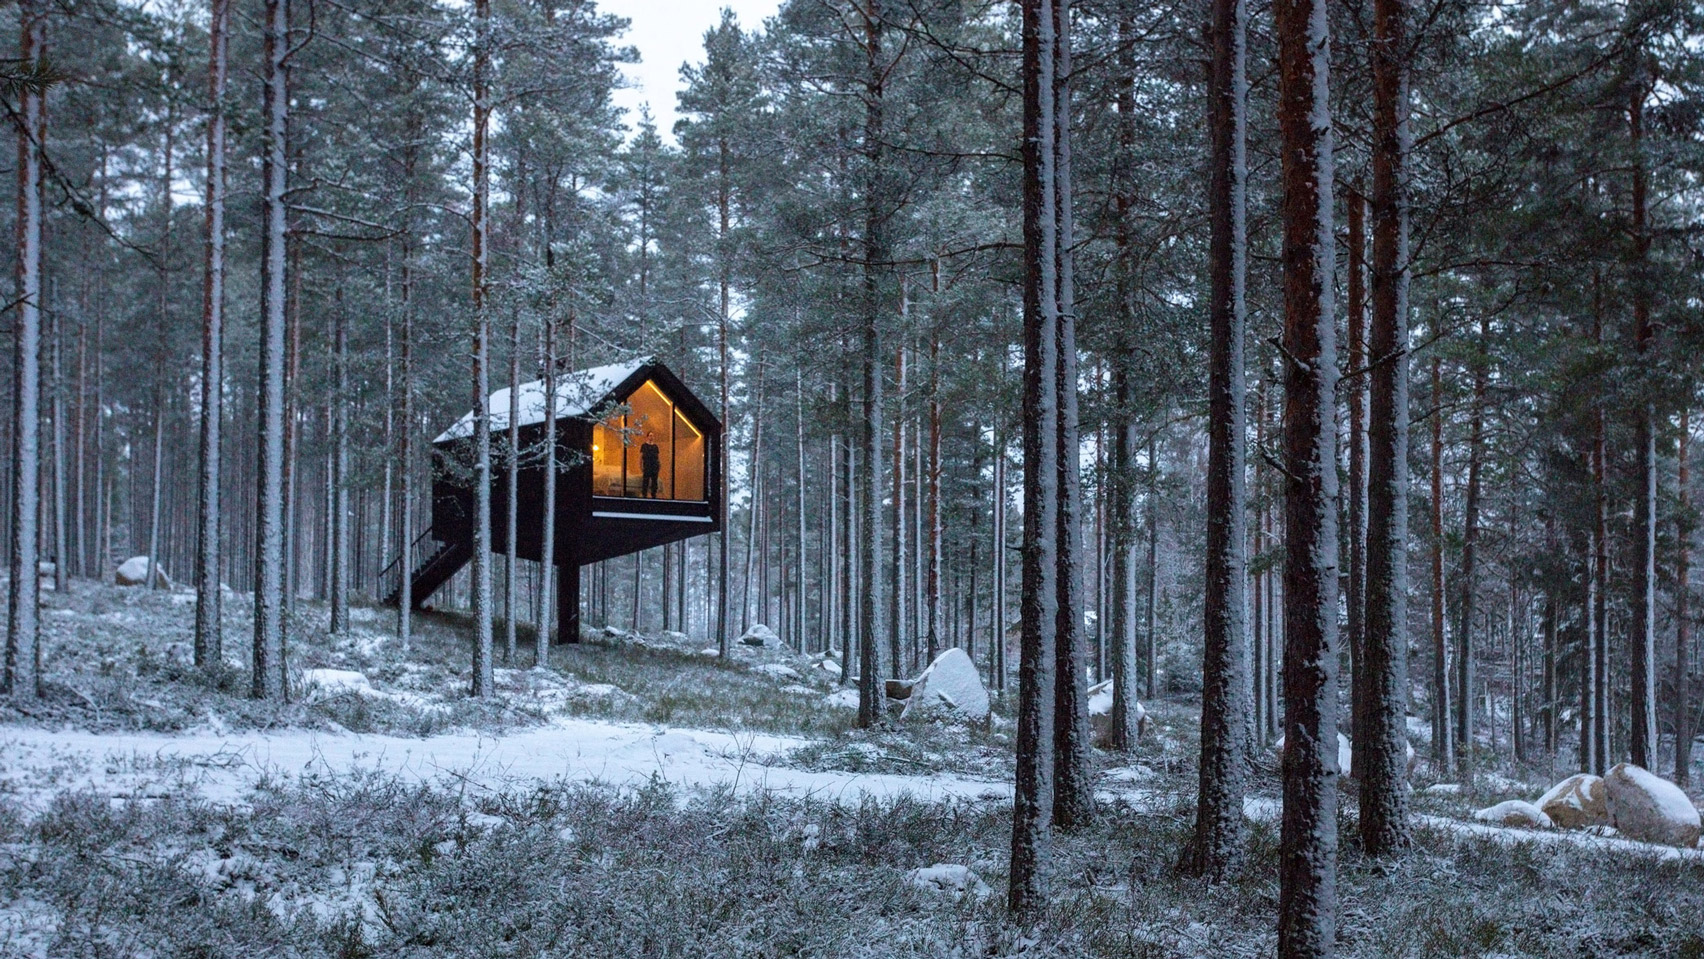 Cabana de cor preta assinada pelo Studio Puisto que elevou-a em uma única coluna. Localizado no Parque Nacional Salamajärvi, na Finlândia.